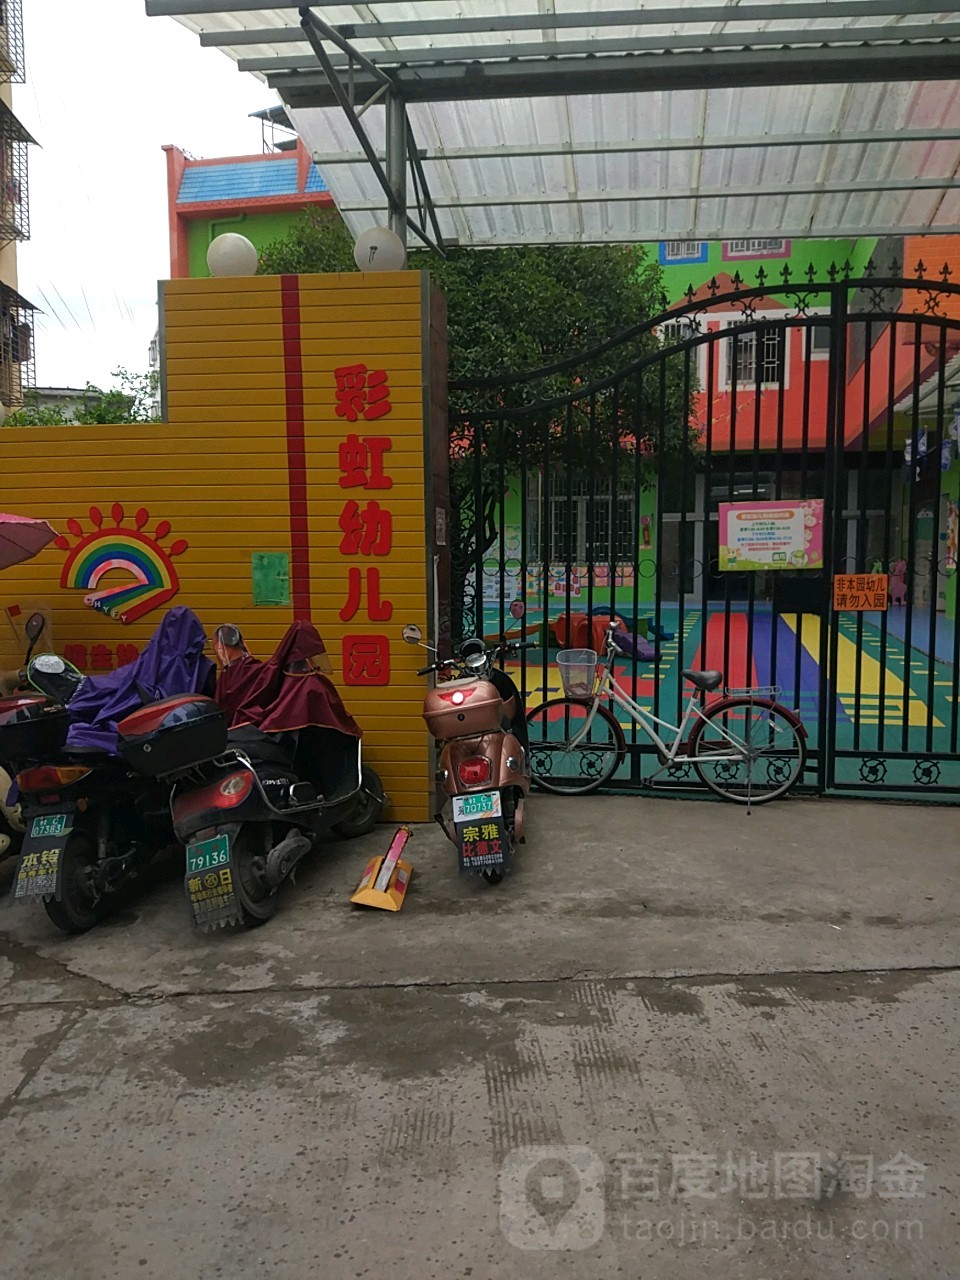 彩虹幼儿园的图片